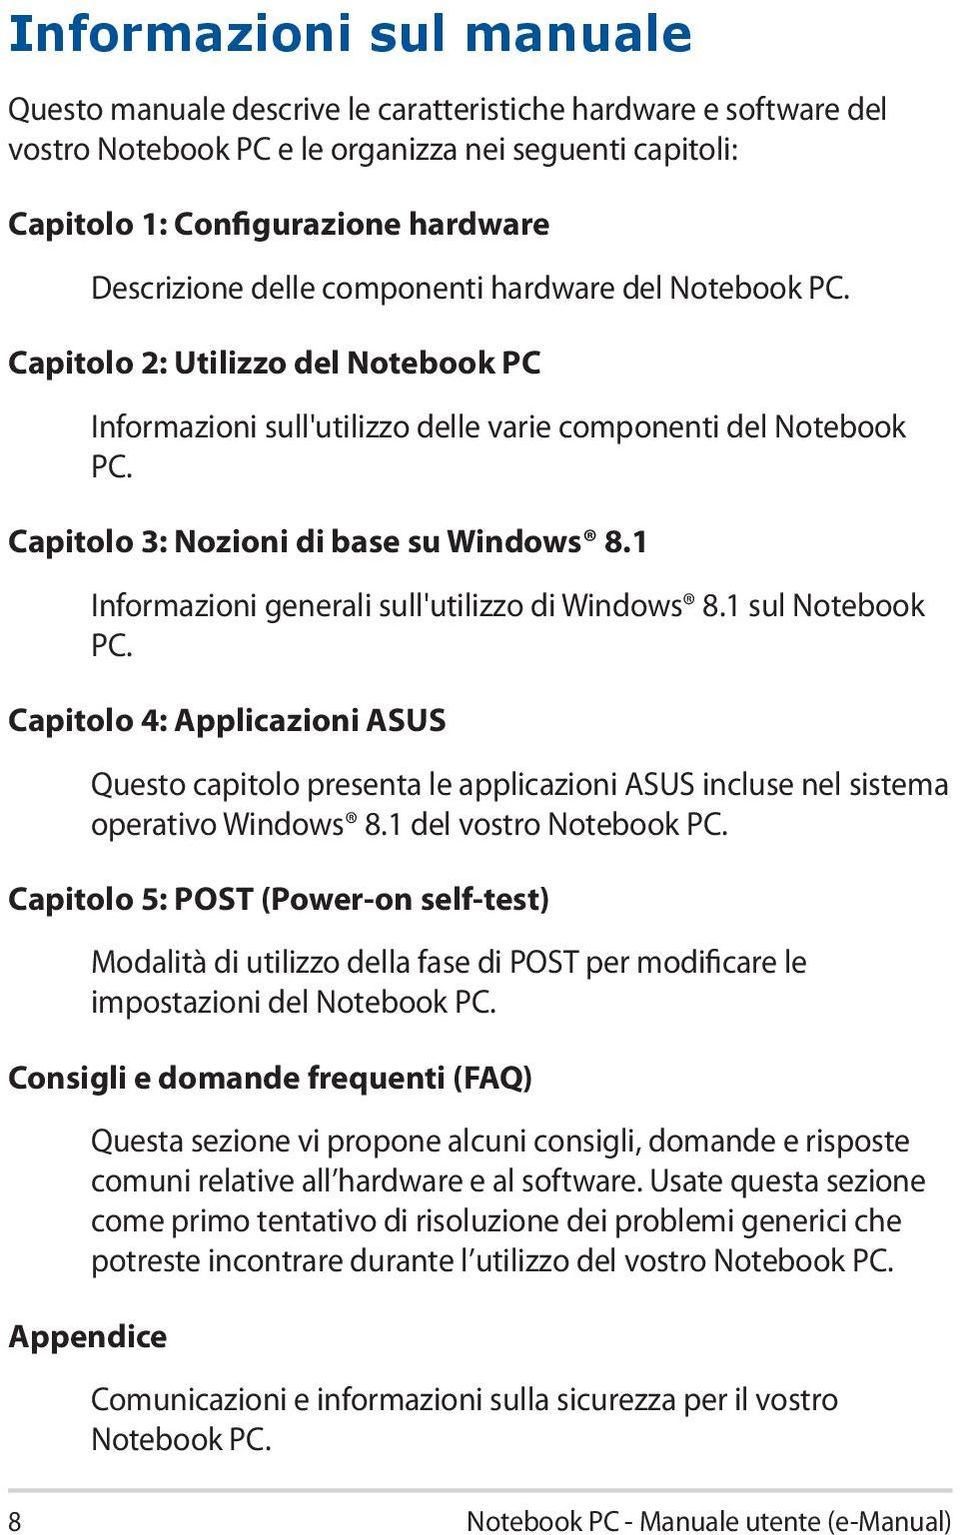 1 Informazioni generali sull'utilizzo di Windows 8.1 sul Notebook PC. Capitolo 4: Applicazioni ASUS Questo capitolo presenta le applicazioni ASUS incluse nel sistema operativo Windows 8.